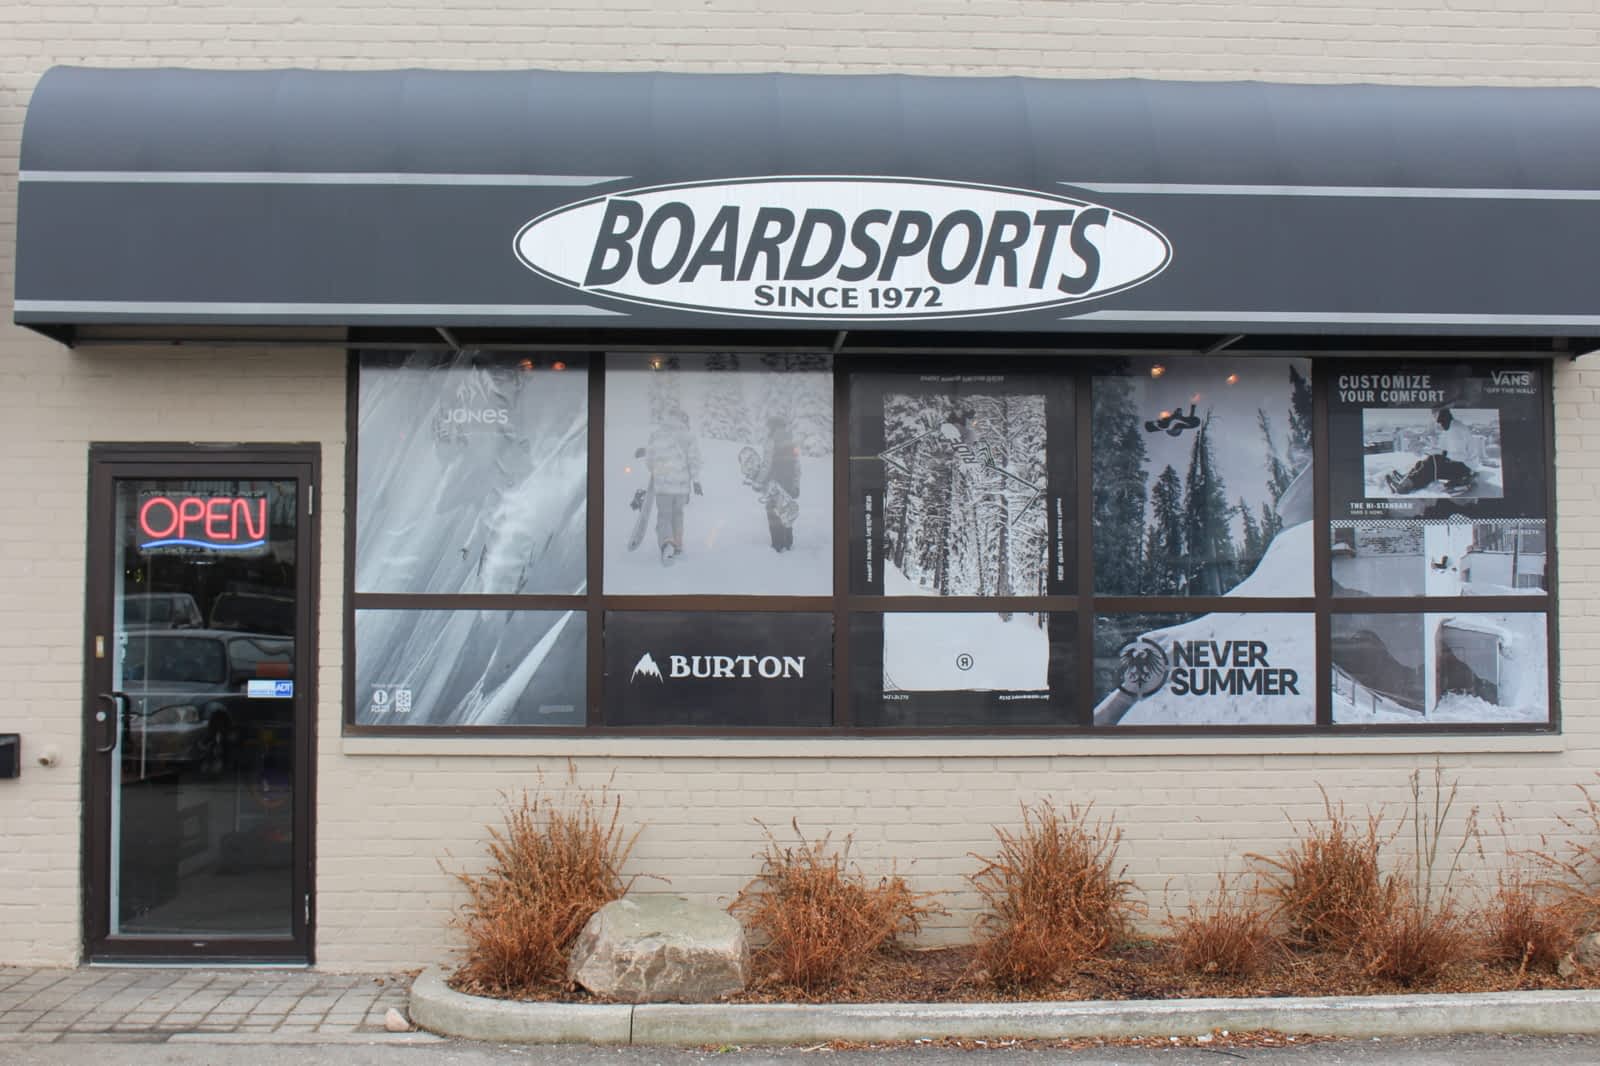 KIDS Boardsports Storefront in Leaside, Toronto